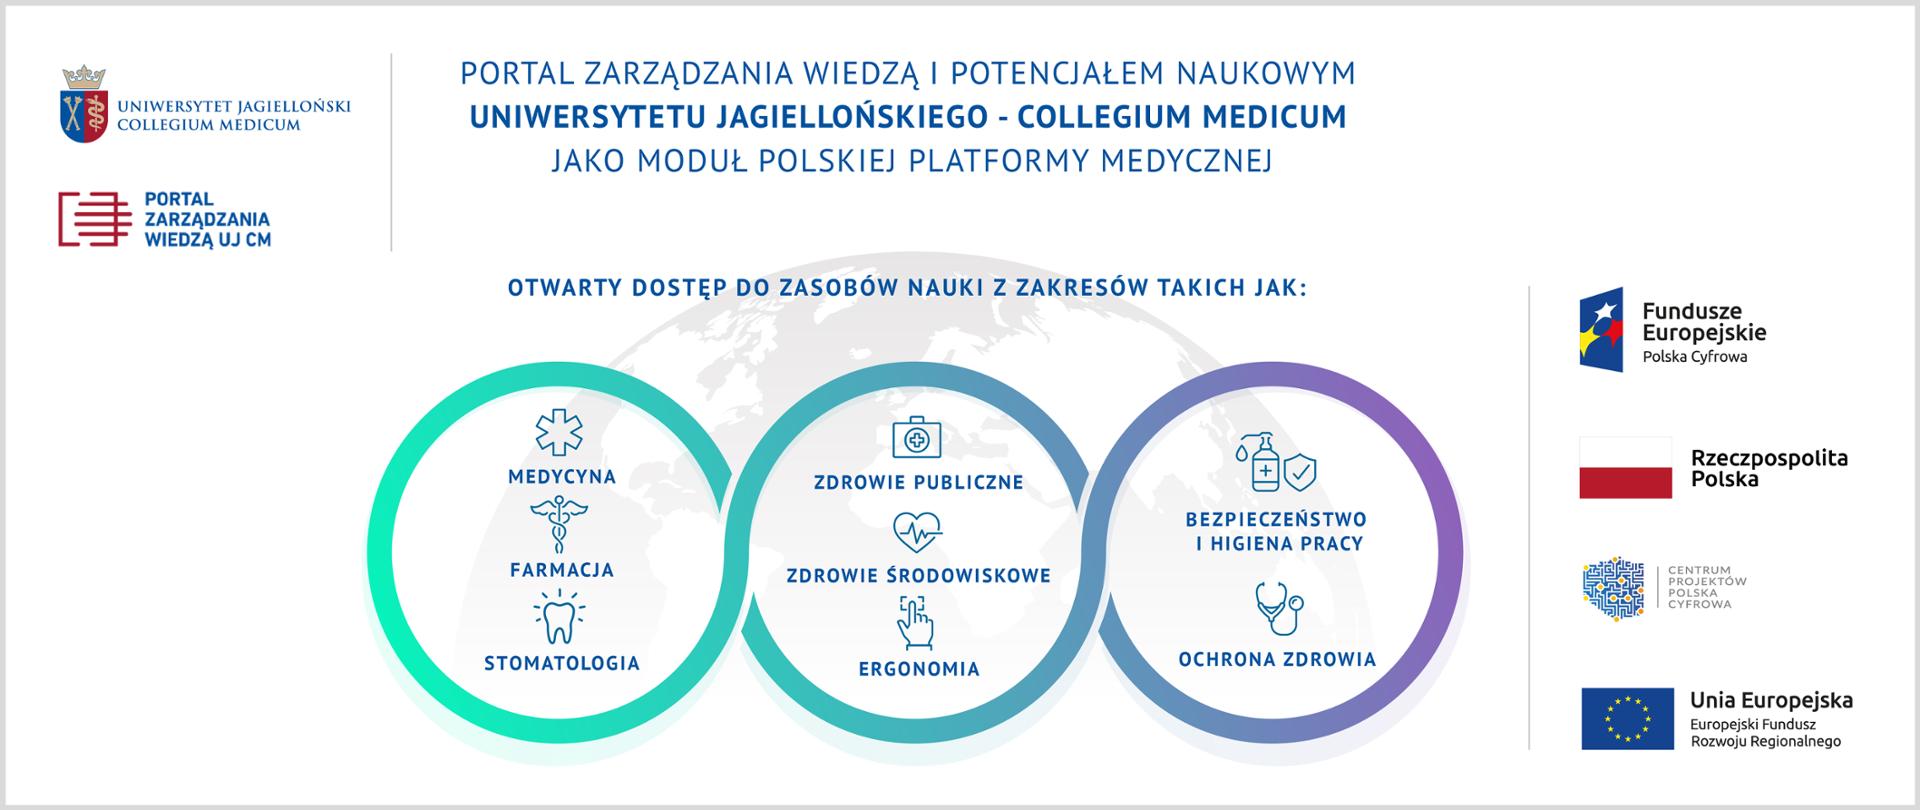 Portal zarządzania wiedzą i potencjałem naukowym Uniwersytetu Jagiellońskiego – Collegium Medicum jako moduł Polskiej Platformy Medycznej